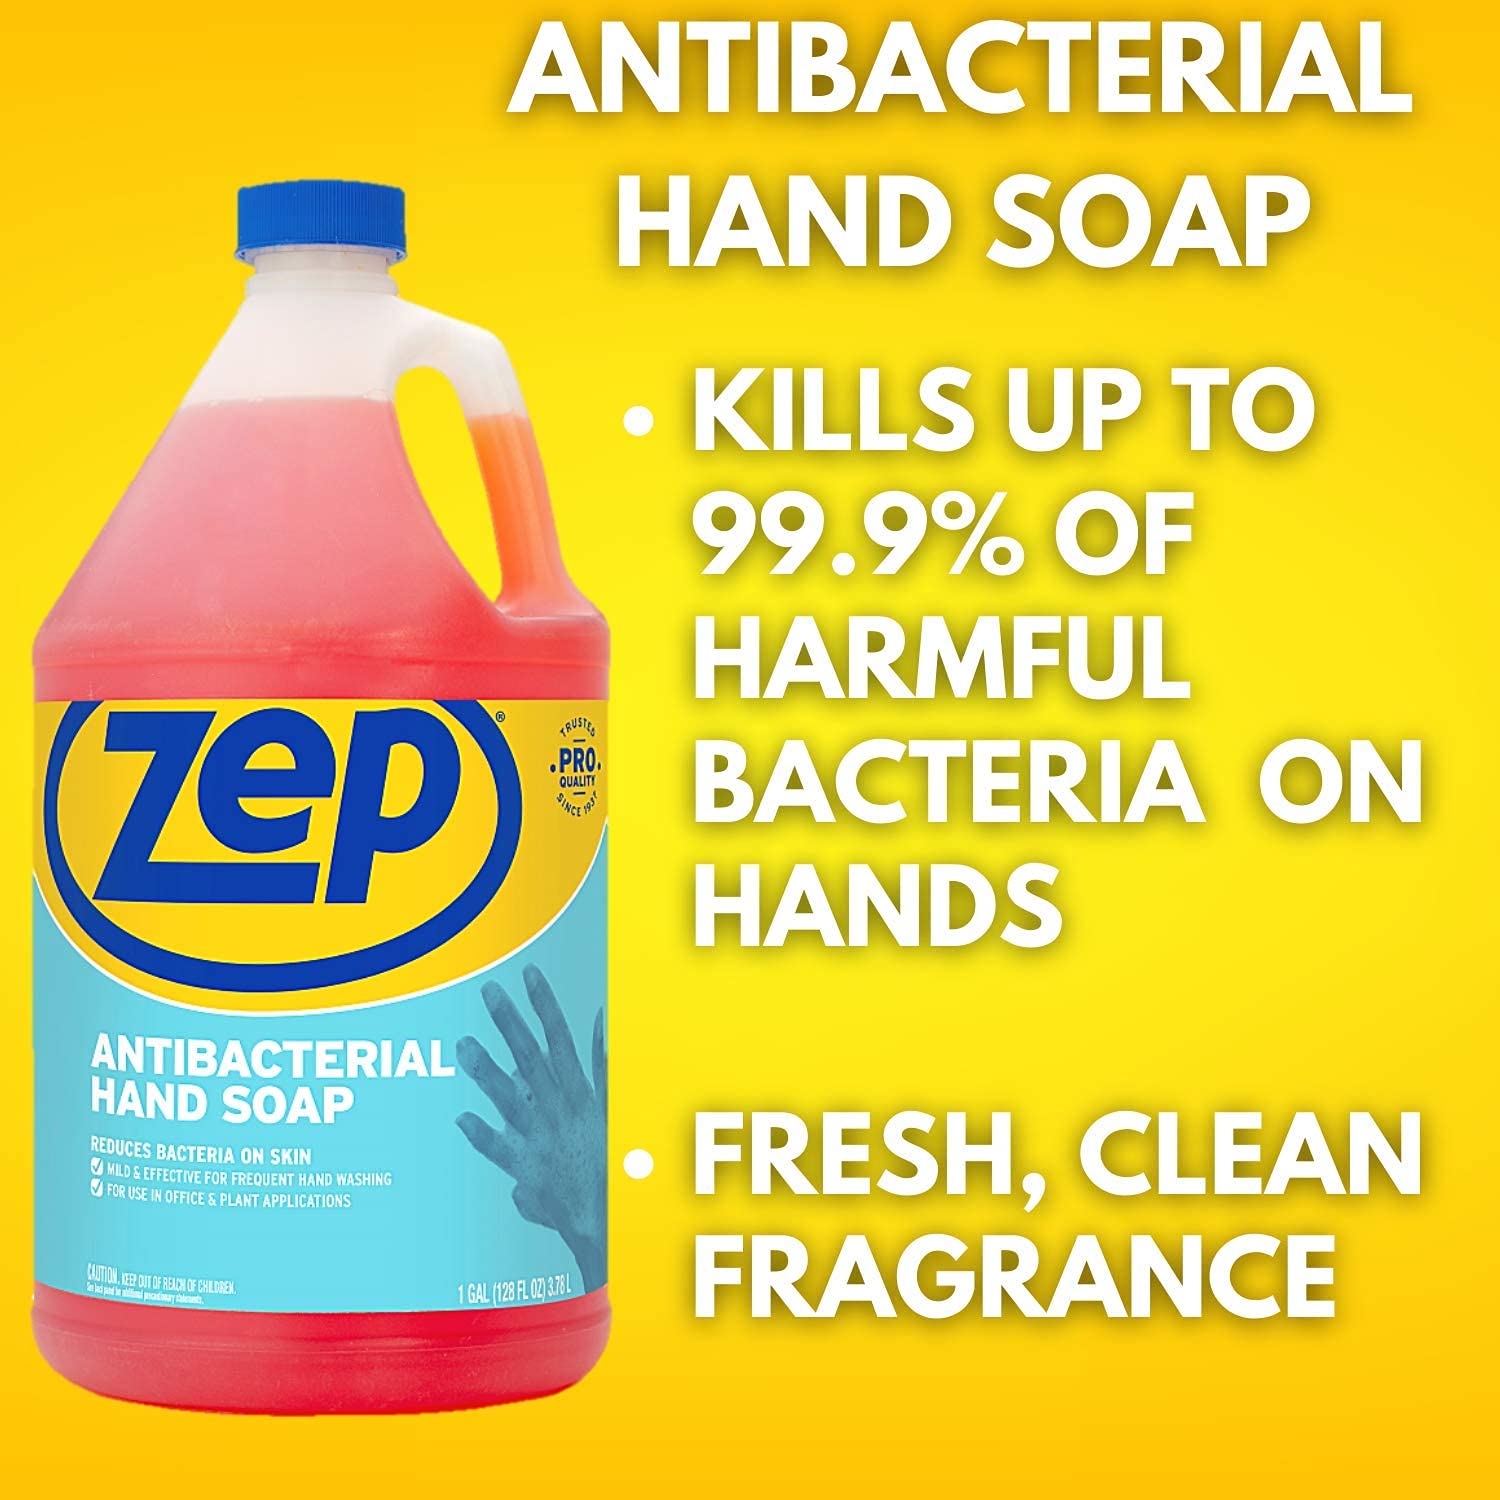 HAND CLEANER HAND CLEANER - Hand Cleaner Hand Cleaner - Zep Professio